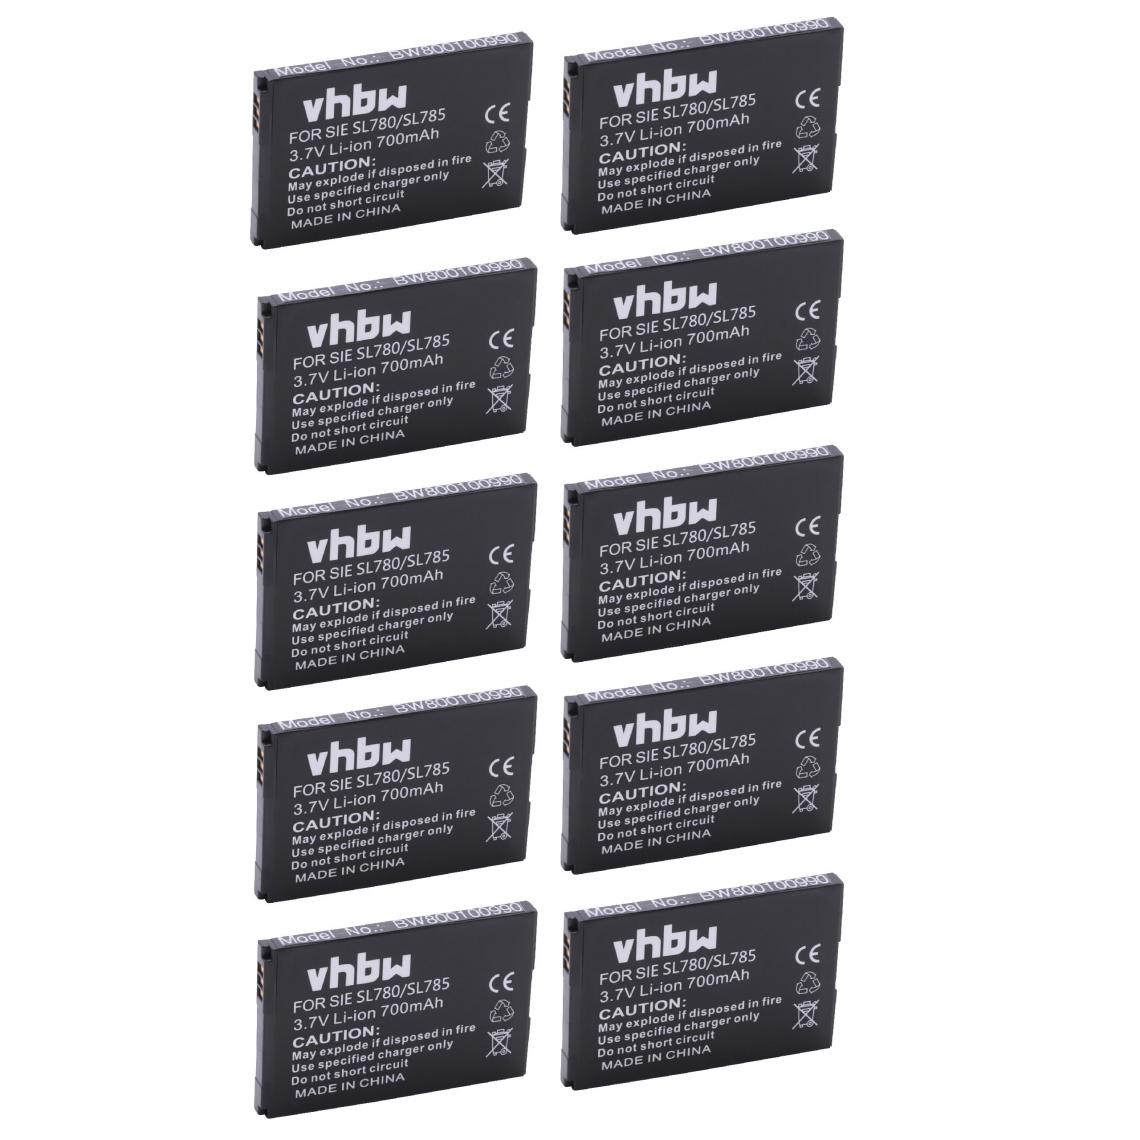 Vhbw - vhbw 10x Batteries remplacement pour Siemens Gigaset 4250366817255, S30852-D2152-X1 pour téléphone fixe sans fil (700mAh, 3,7V, Li-ion) - Batterie téléphone